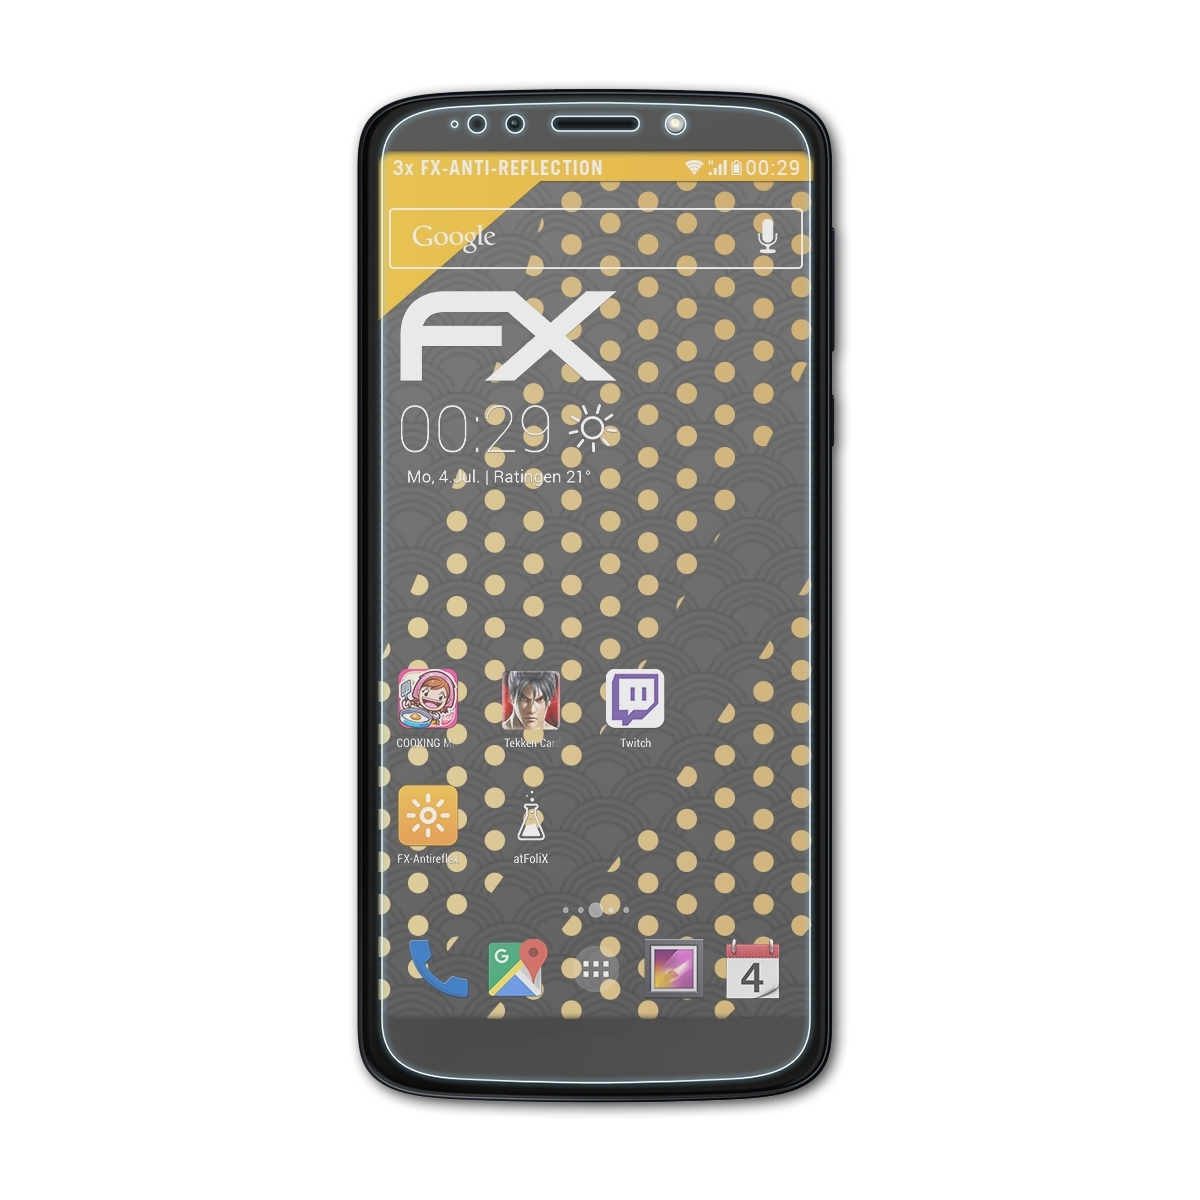 ATFOLIX 3x FX-Antireflex Displayschutz(für Lenovo Moto Motorola Play) G6